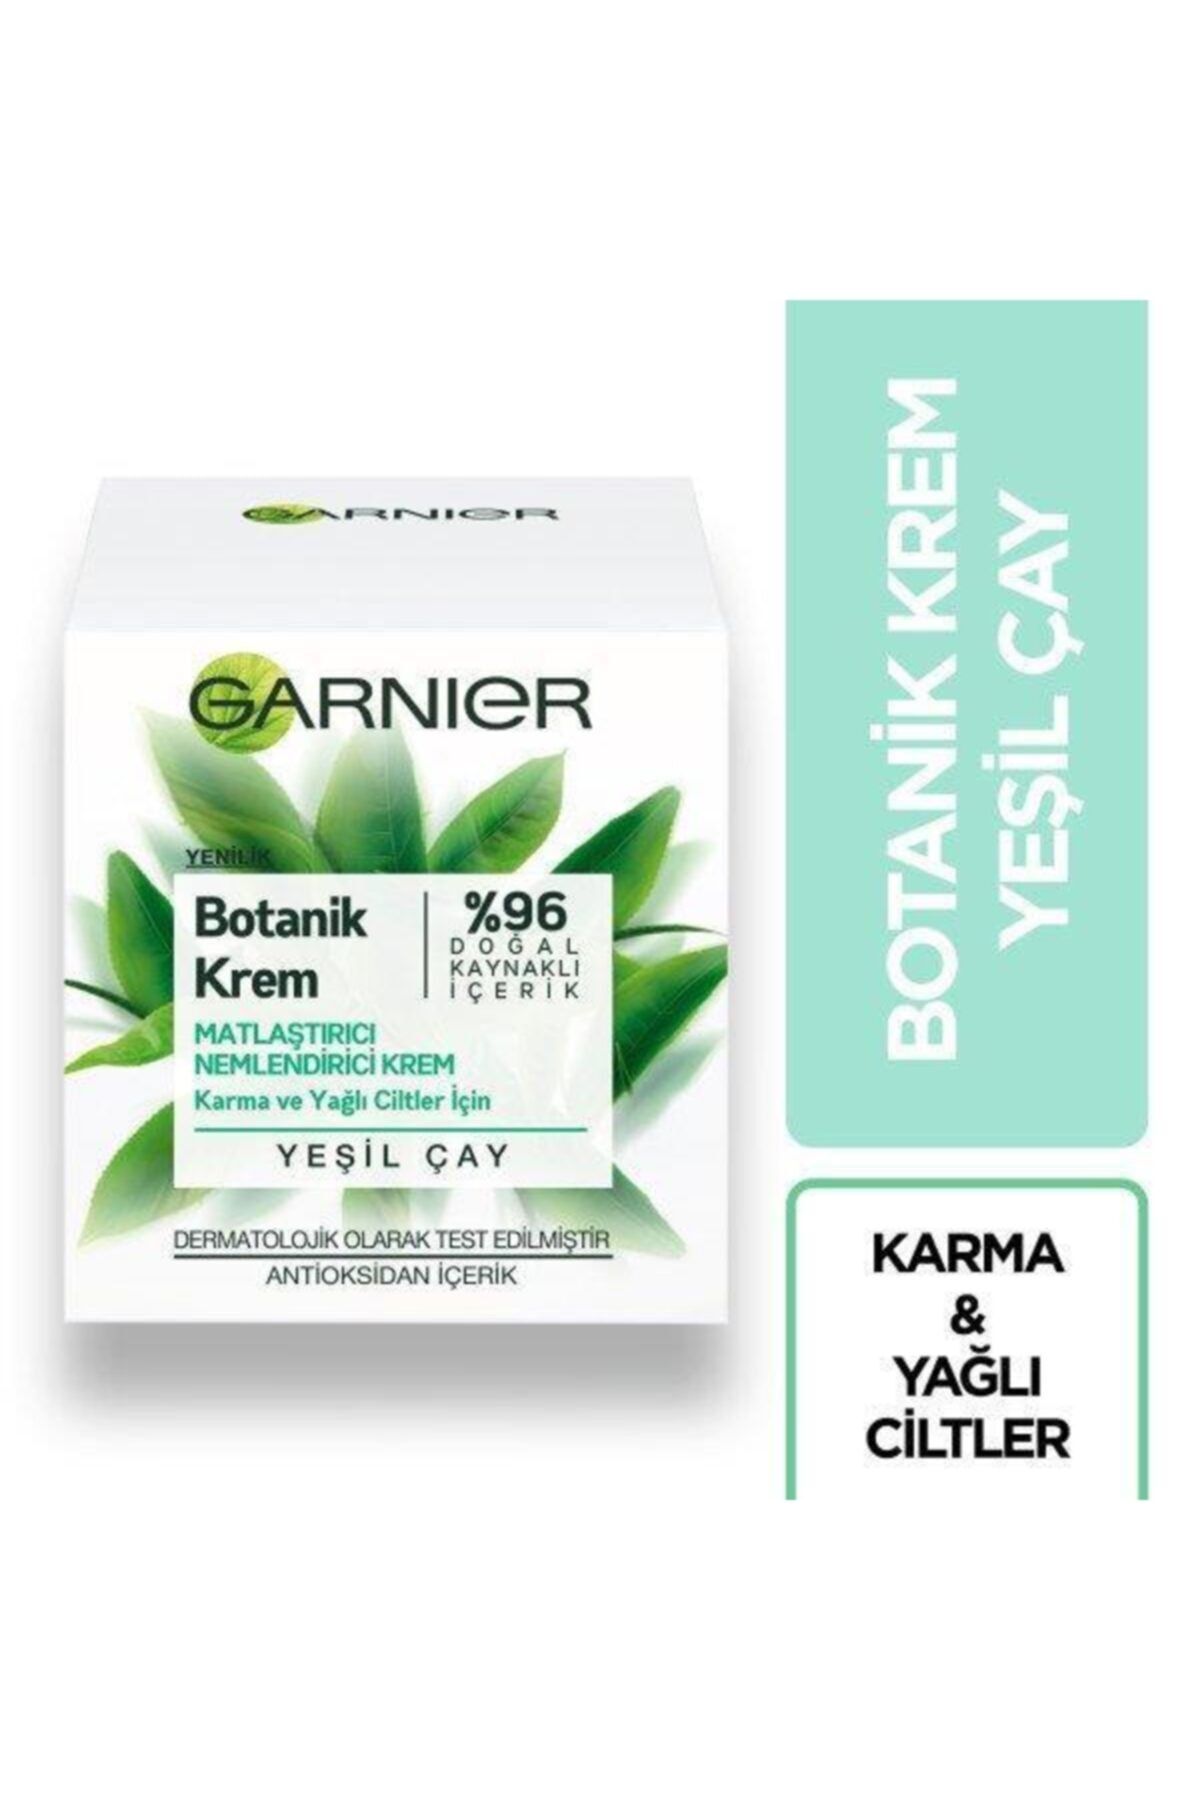 Garnier Botanik Matlastırıcı Antioksidan Nemlendirici Krem //ıkra9489023